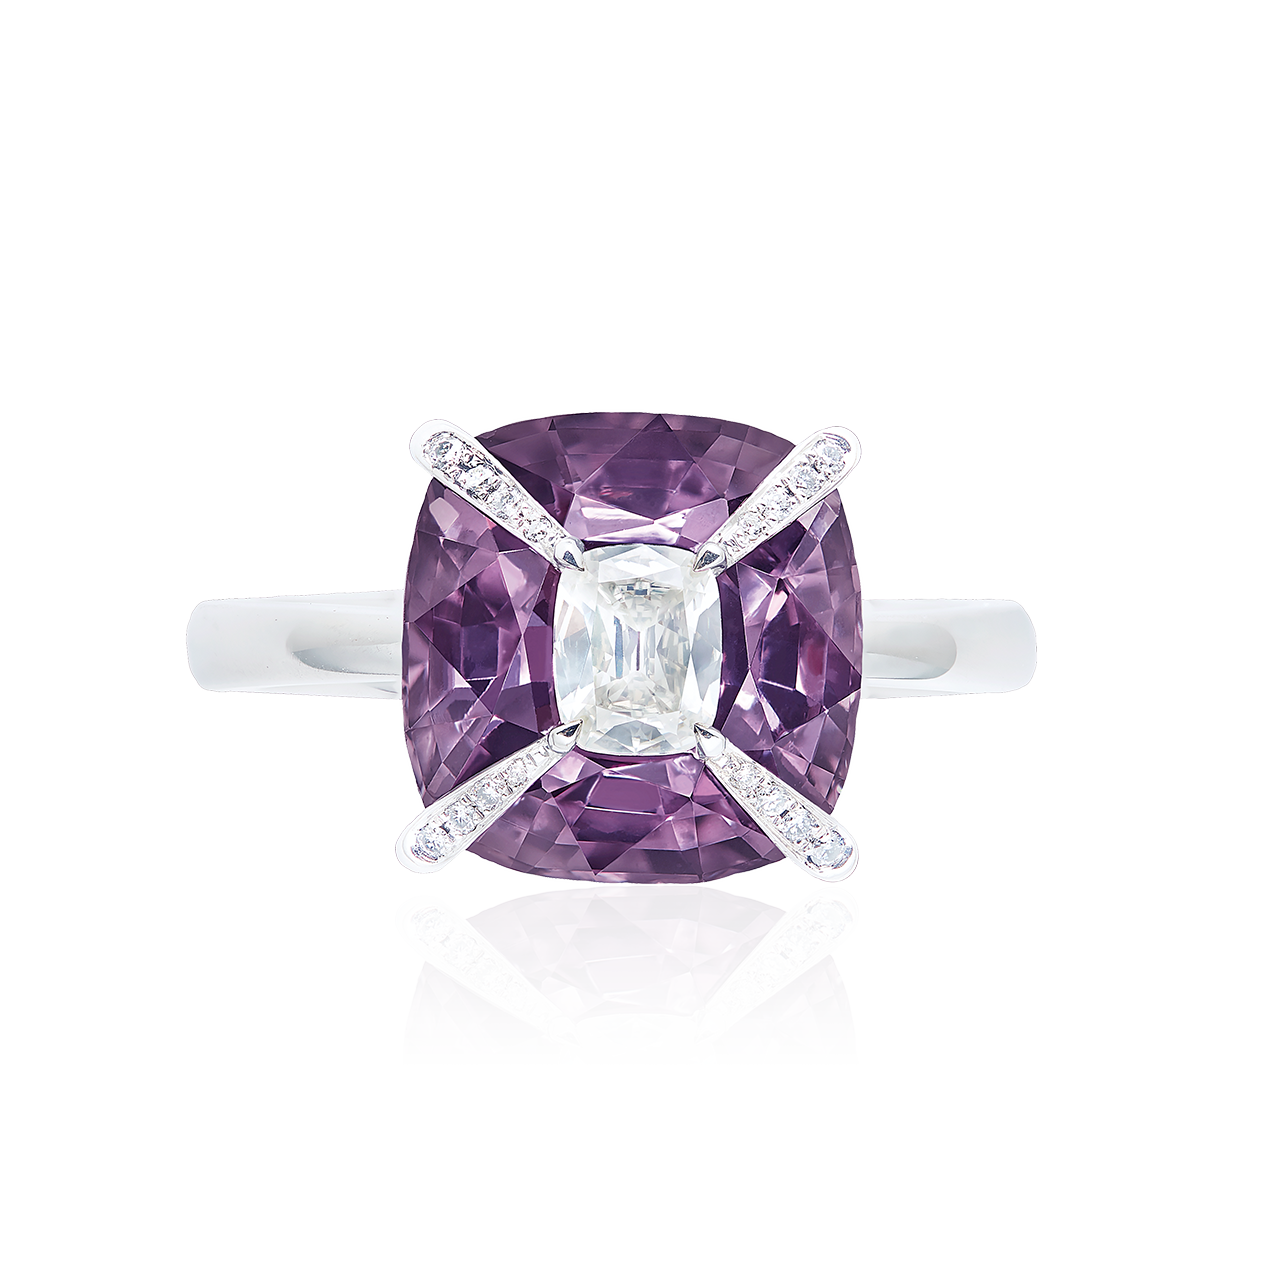 緬甸天然無燒紫尖晶石鑽戒 7.33克拉
Burma Purple Spinel And
Diamond Ring 